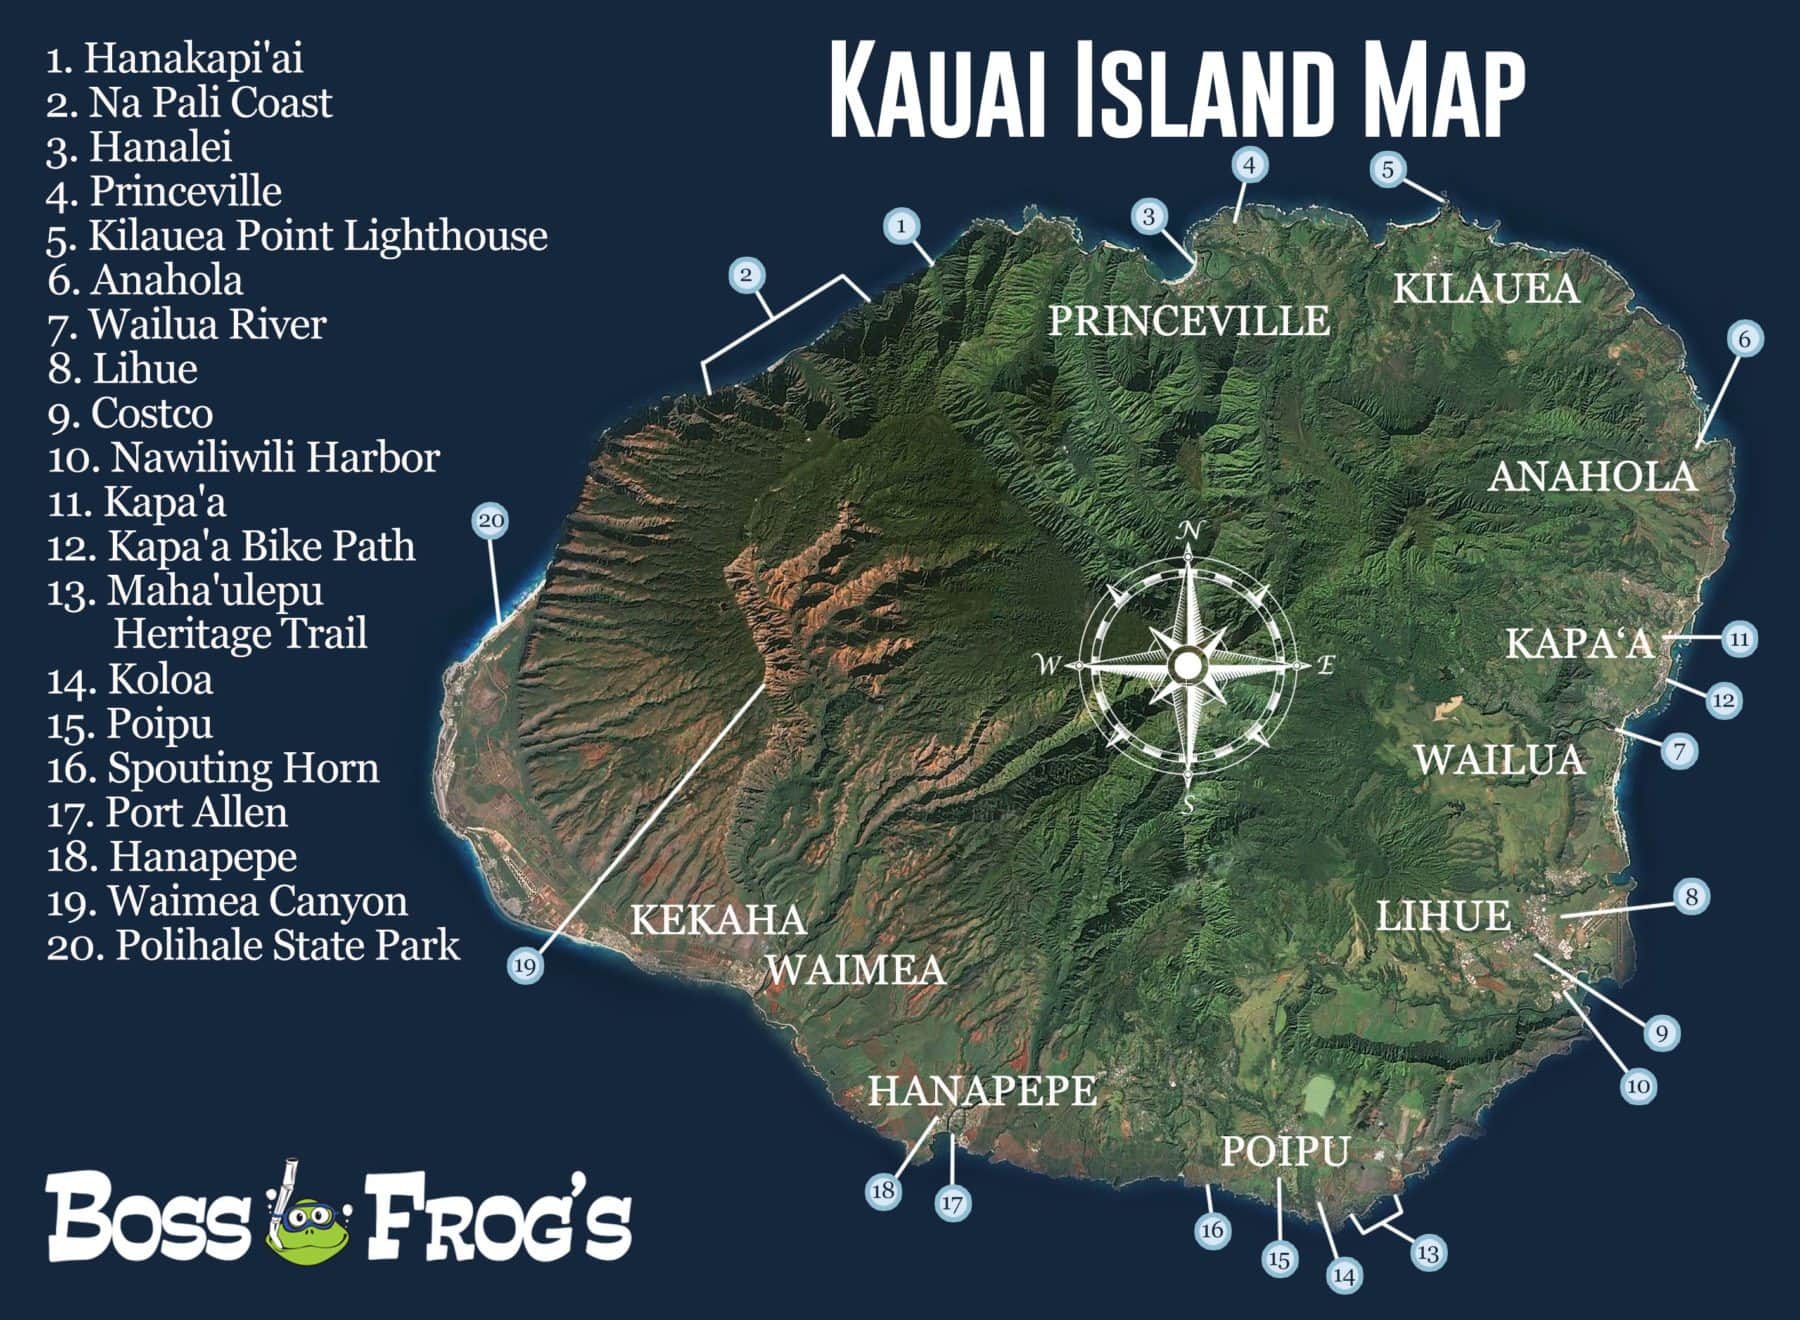 Kauai Island Map - Na Pali Coast, Hanapepe, Poipu, & More!